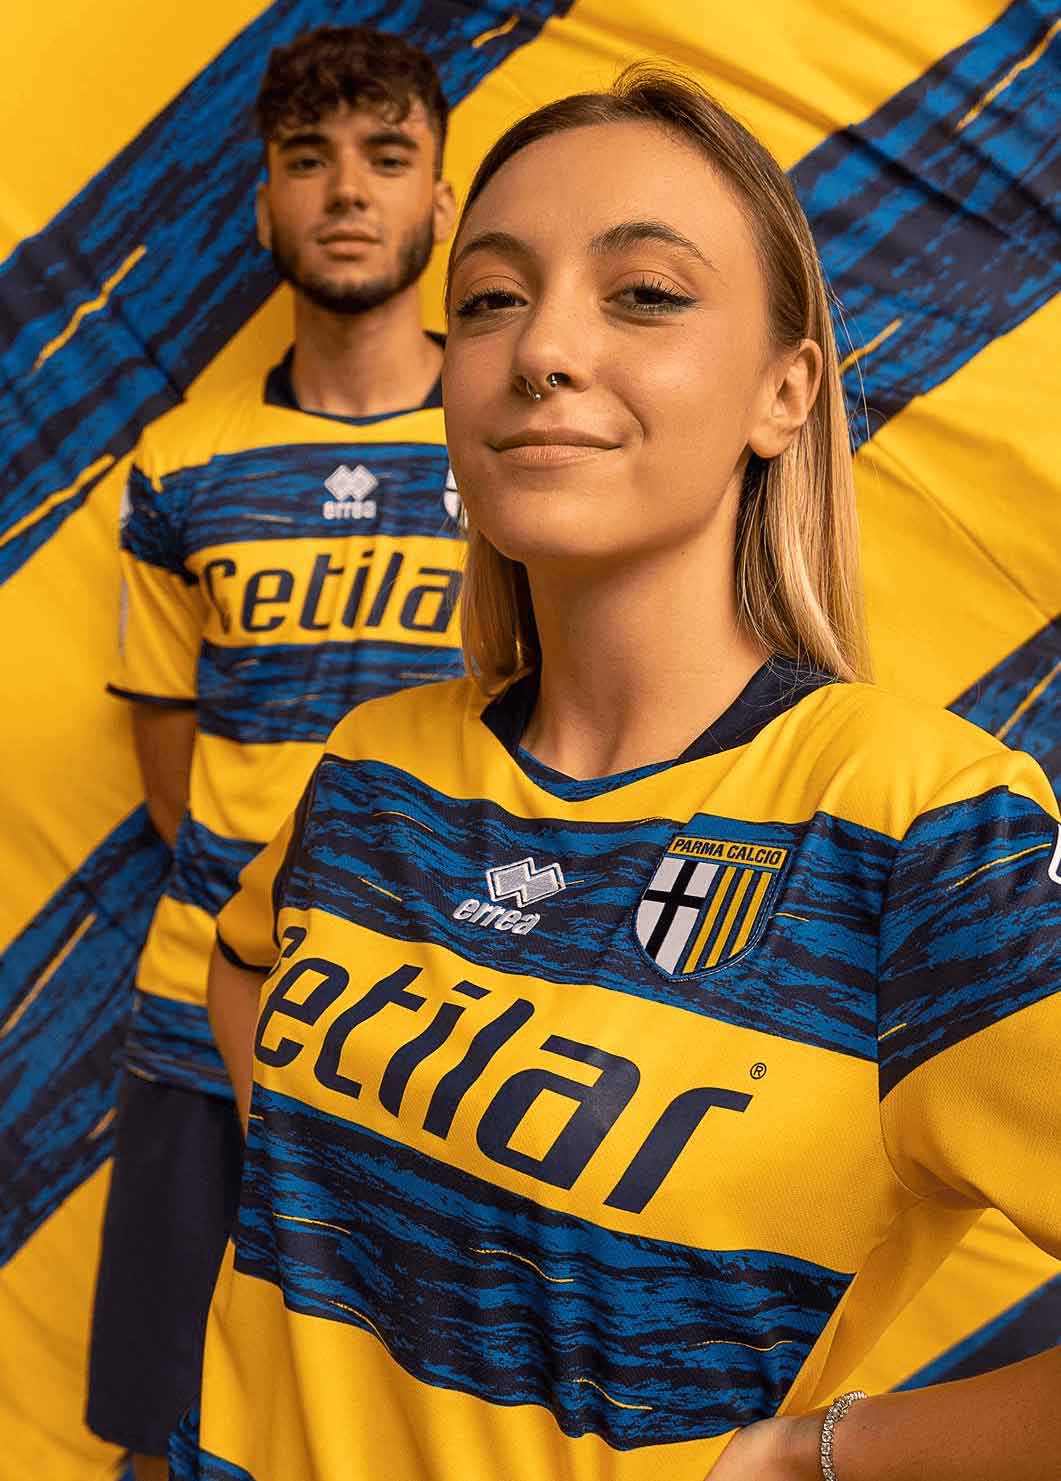 new Parma Calcio jersey